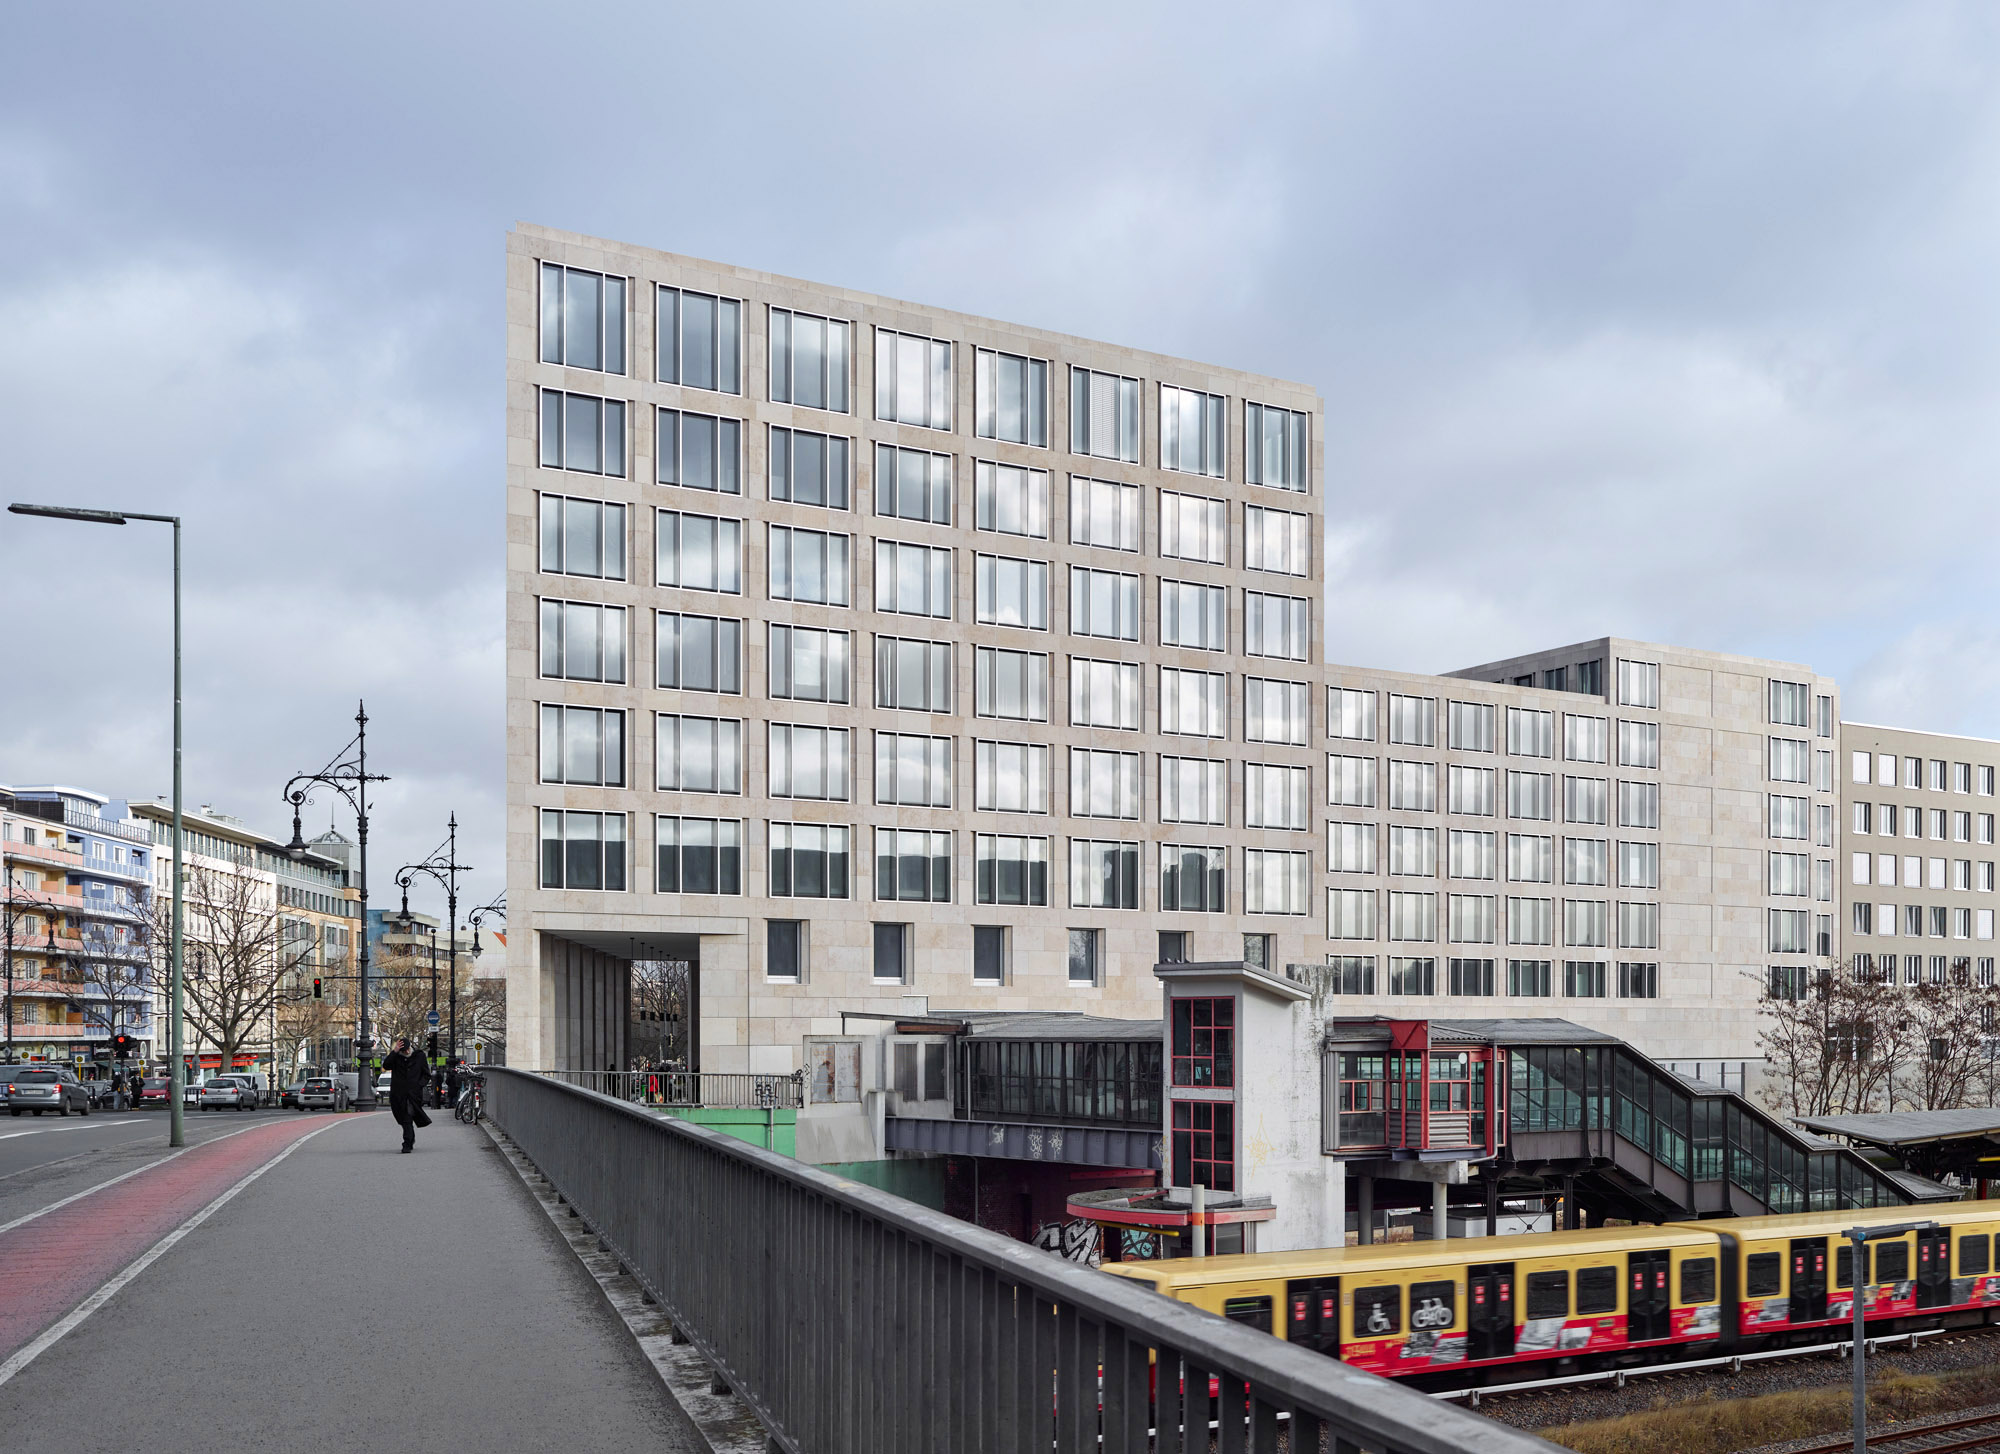 Büro- und Geschäftshaus am Kurfürstendamm Berlin - Eine zweigeschossige Arkade verbindet den bestehenden S-Bahnhof mit dem Henriettenplatz und verstärkt den öffentlichen Charakter des Hauses.